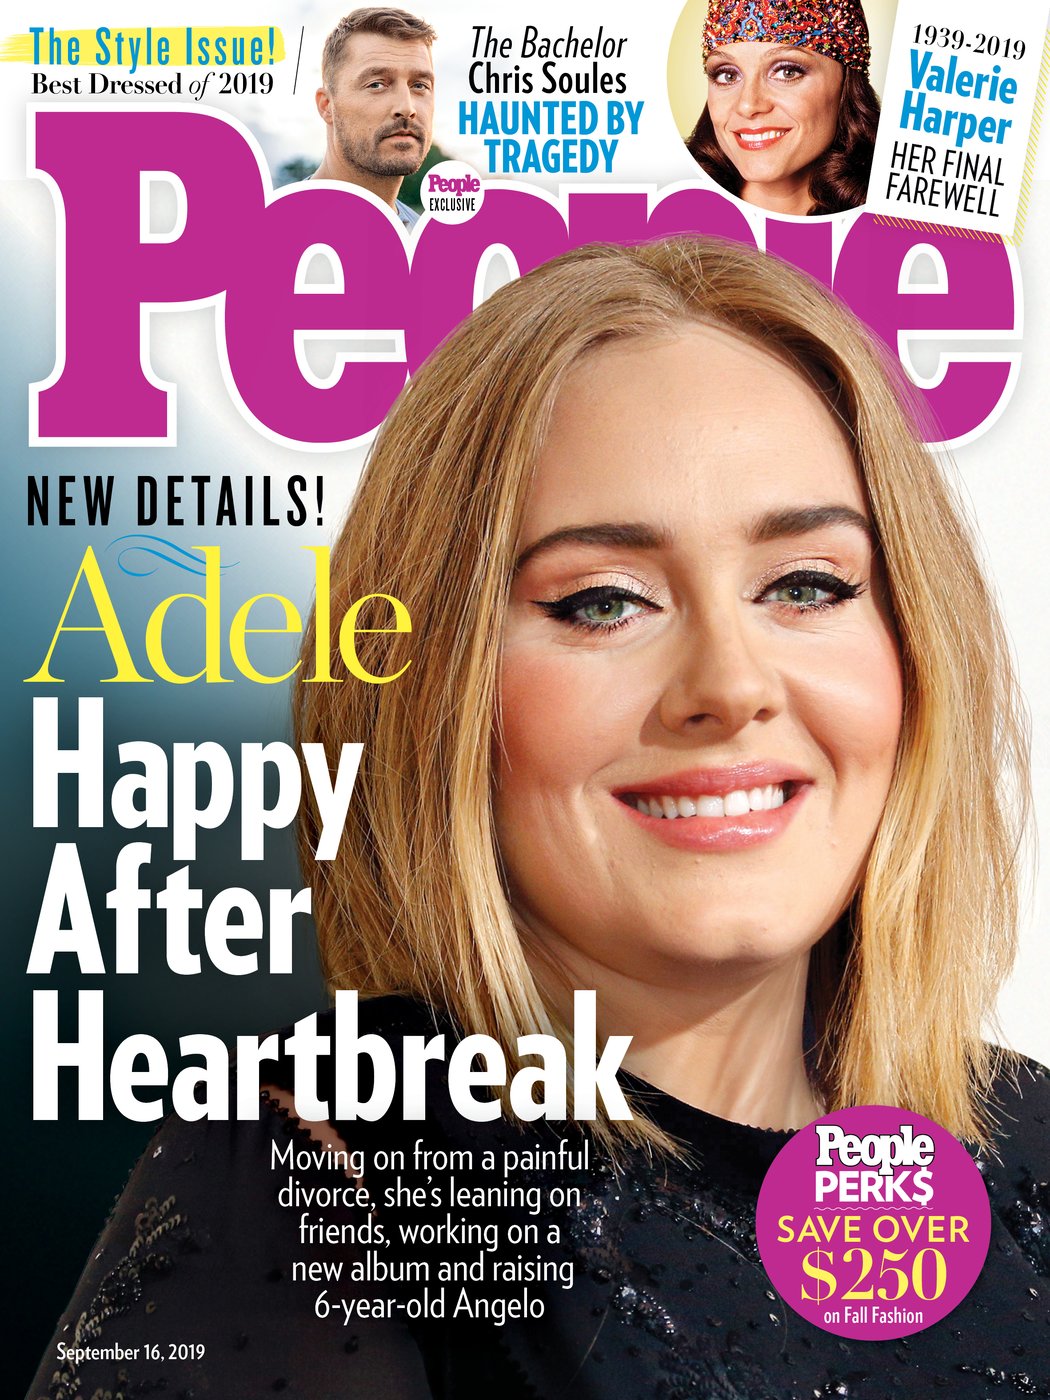 Após divórcio, Adele se sente renovada e deve lançar música neste ano - 2